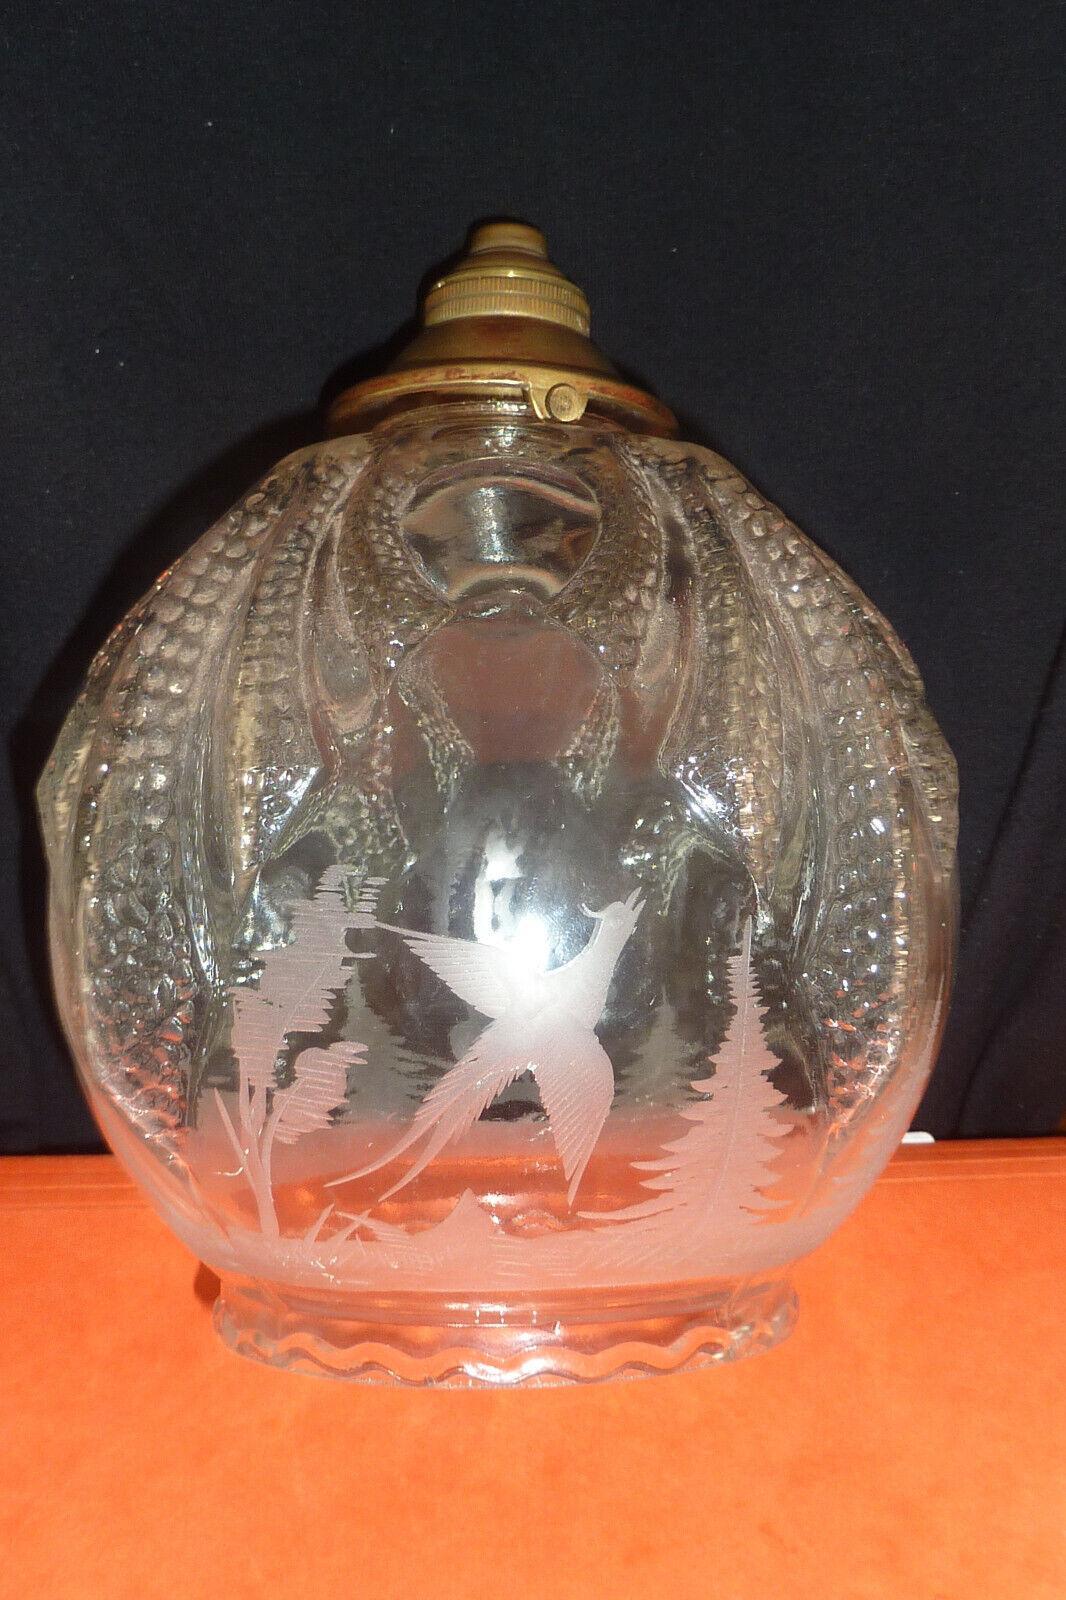 Lanterne de plafond en cristal sculpté Art déco français des années 1920. Des animaux de la forêt en train de jouer sont sculptés dans le cristal. Veuillez regarder attentivement les photos. Il s'agit d'un trésor rare.